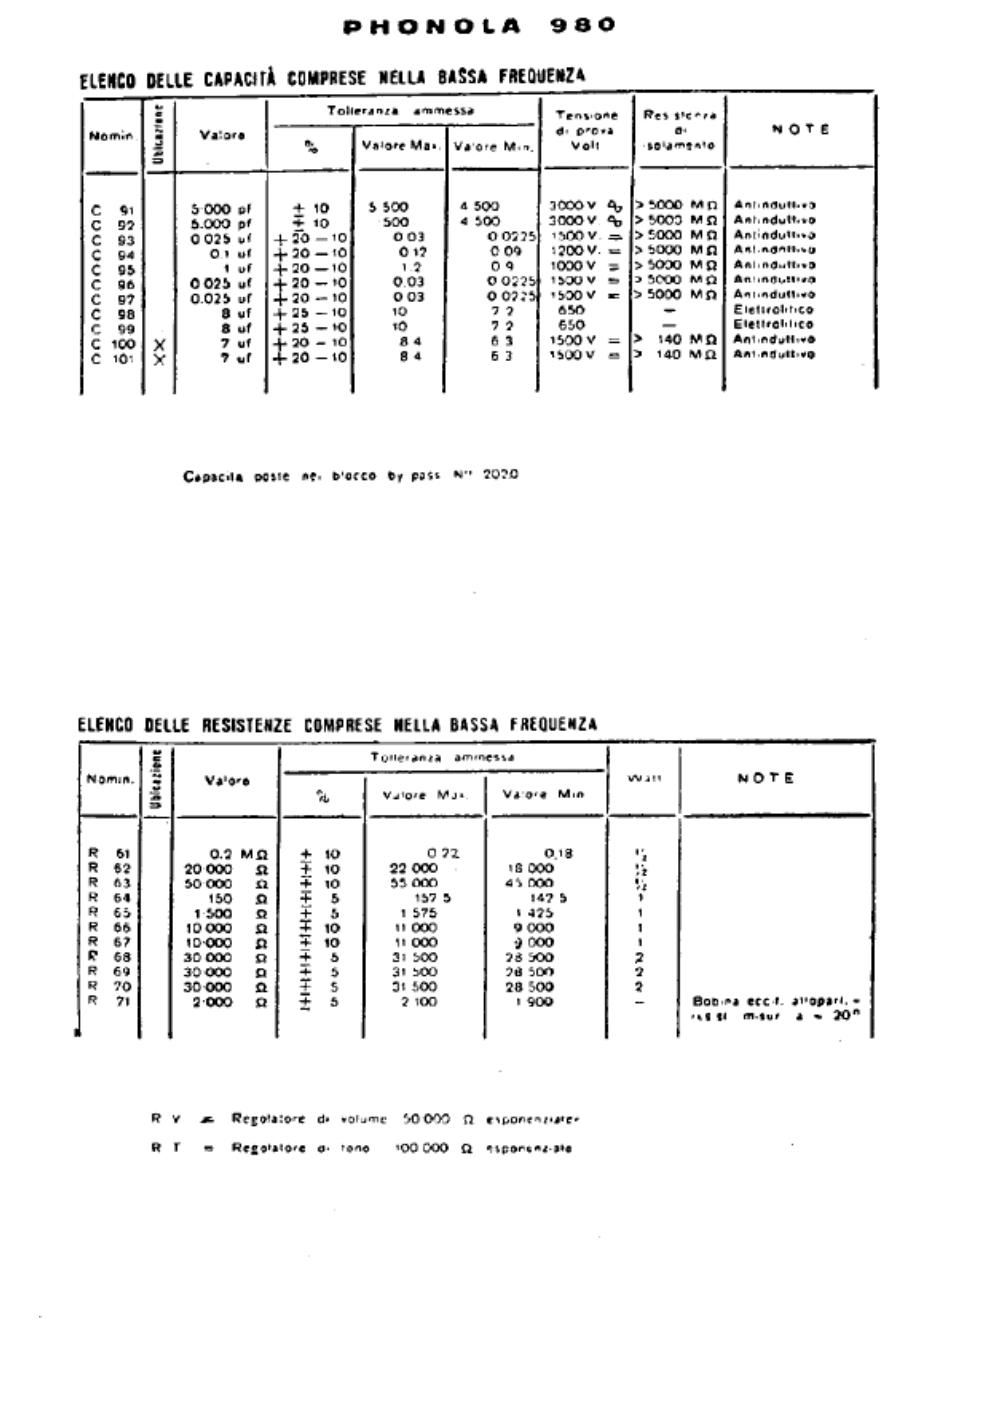 phonola 980 lf unit components